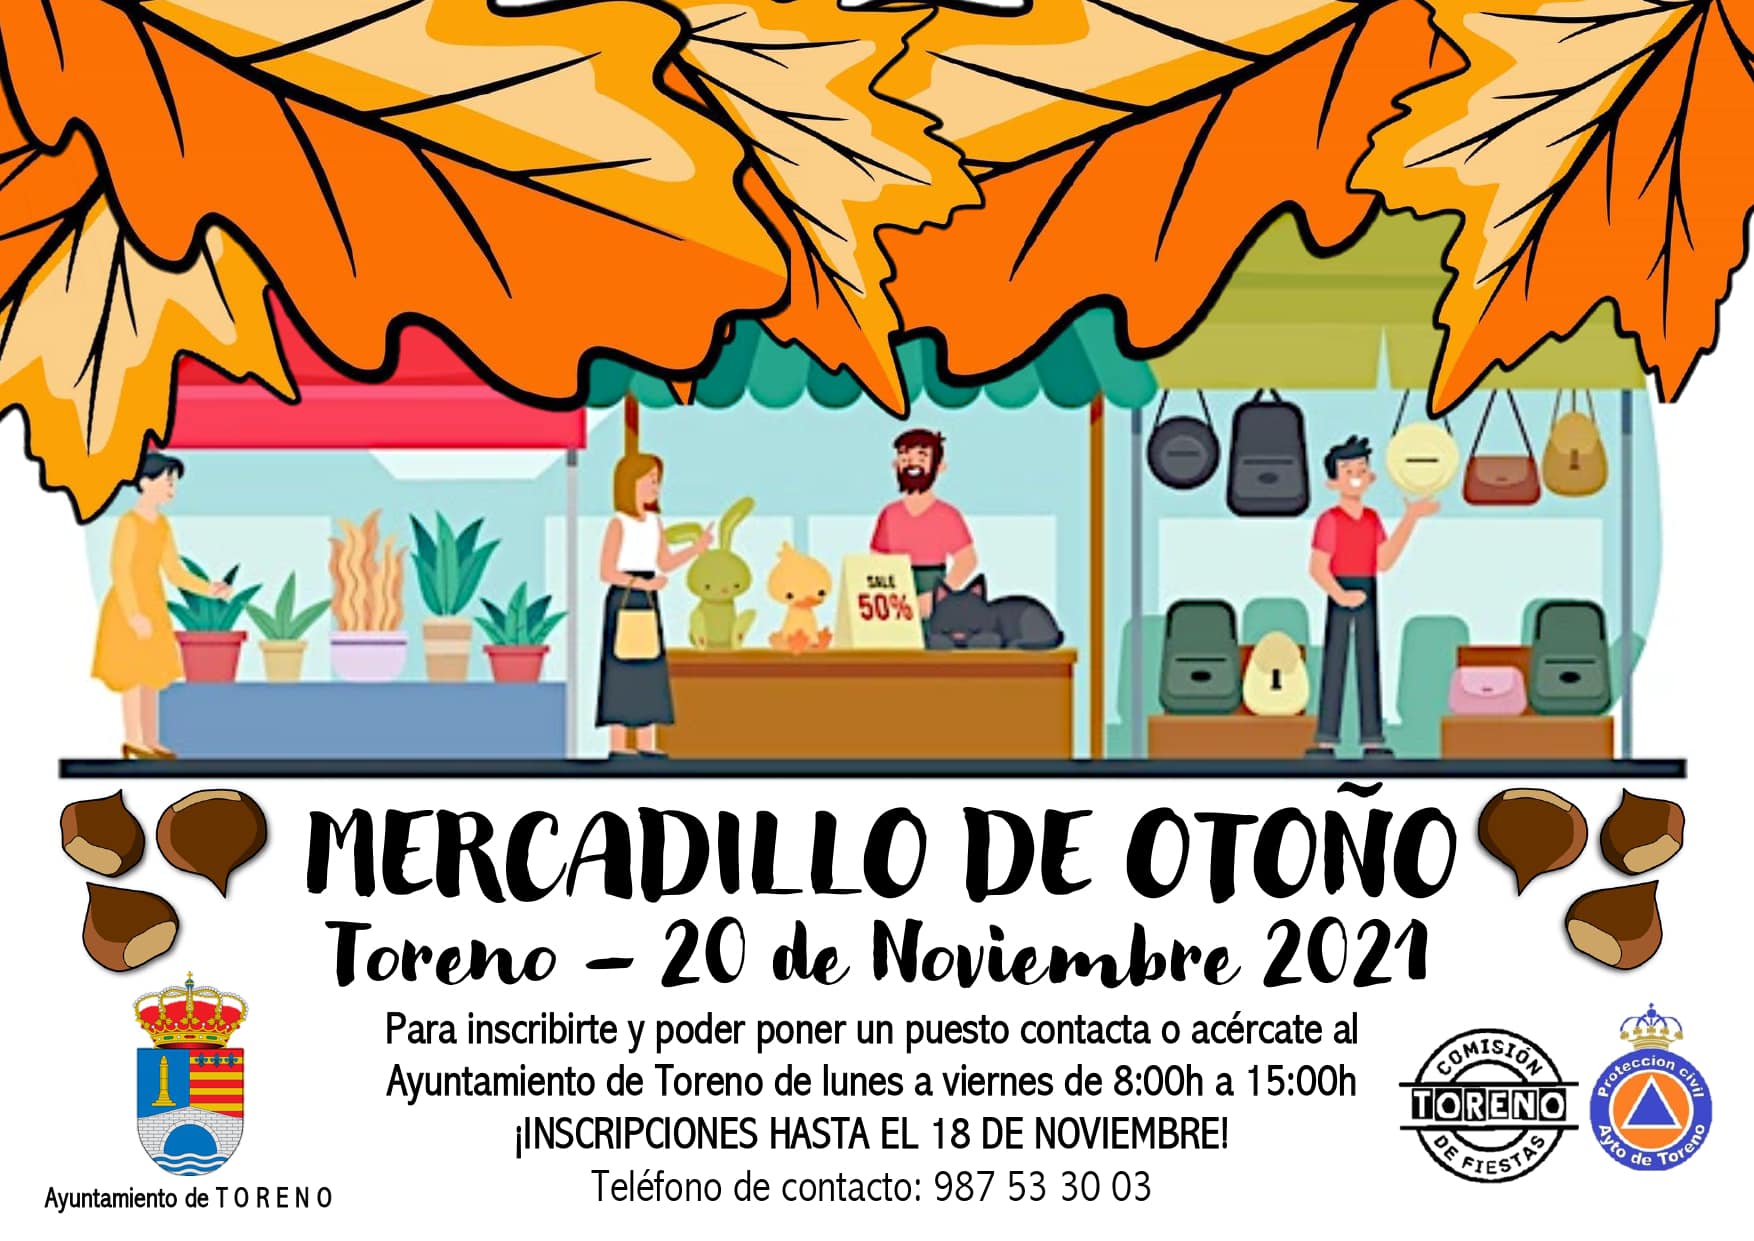 Toreno celebra un Magosto y mercadillo de otoño el próximo noviembre con música y concurso para cocinillas 2